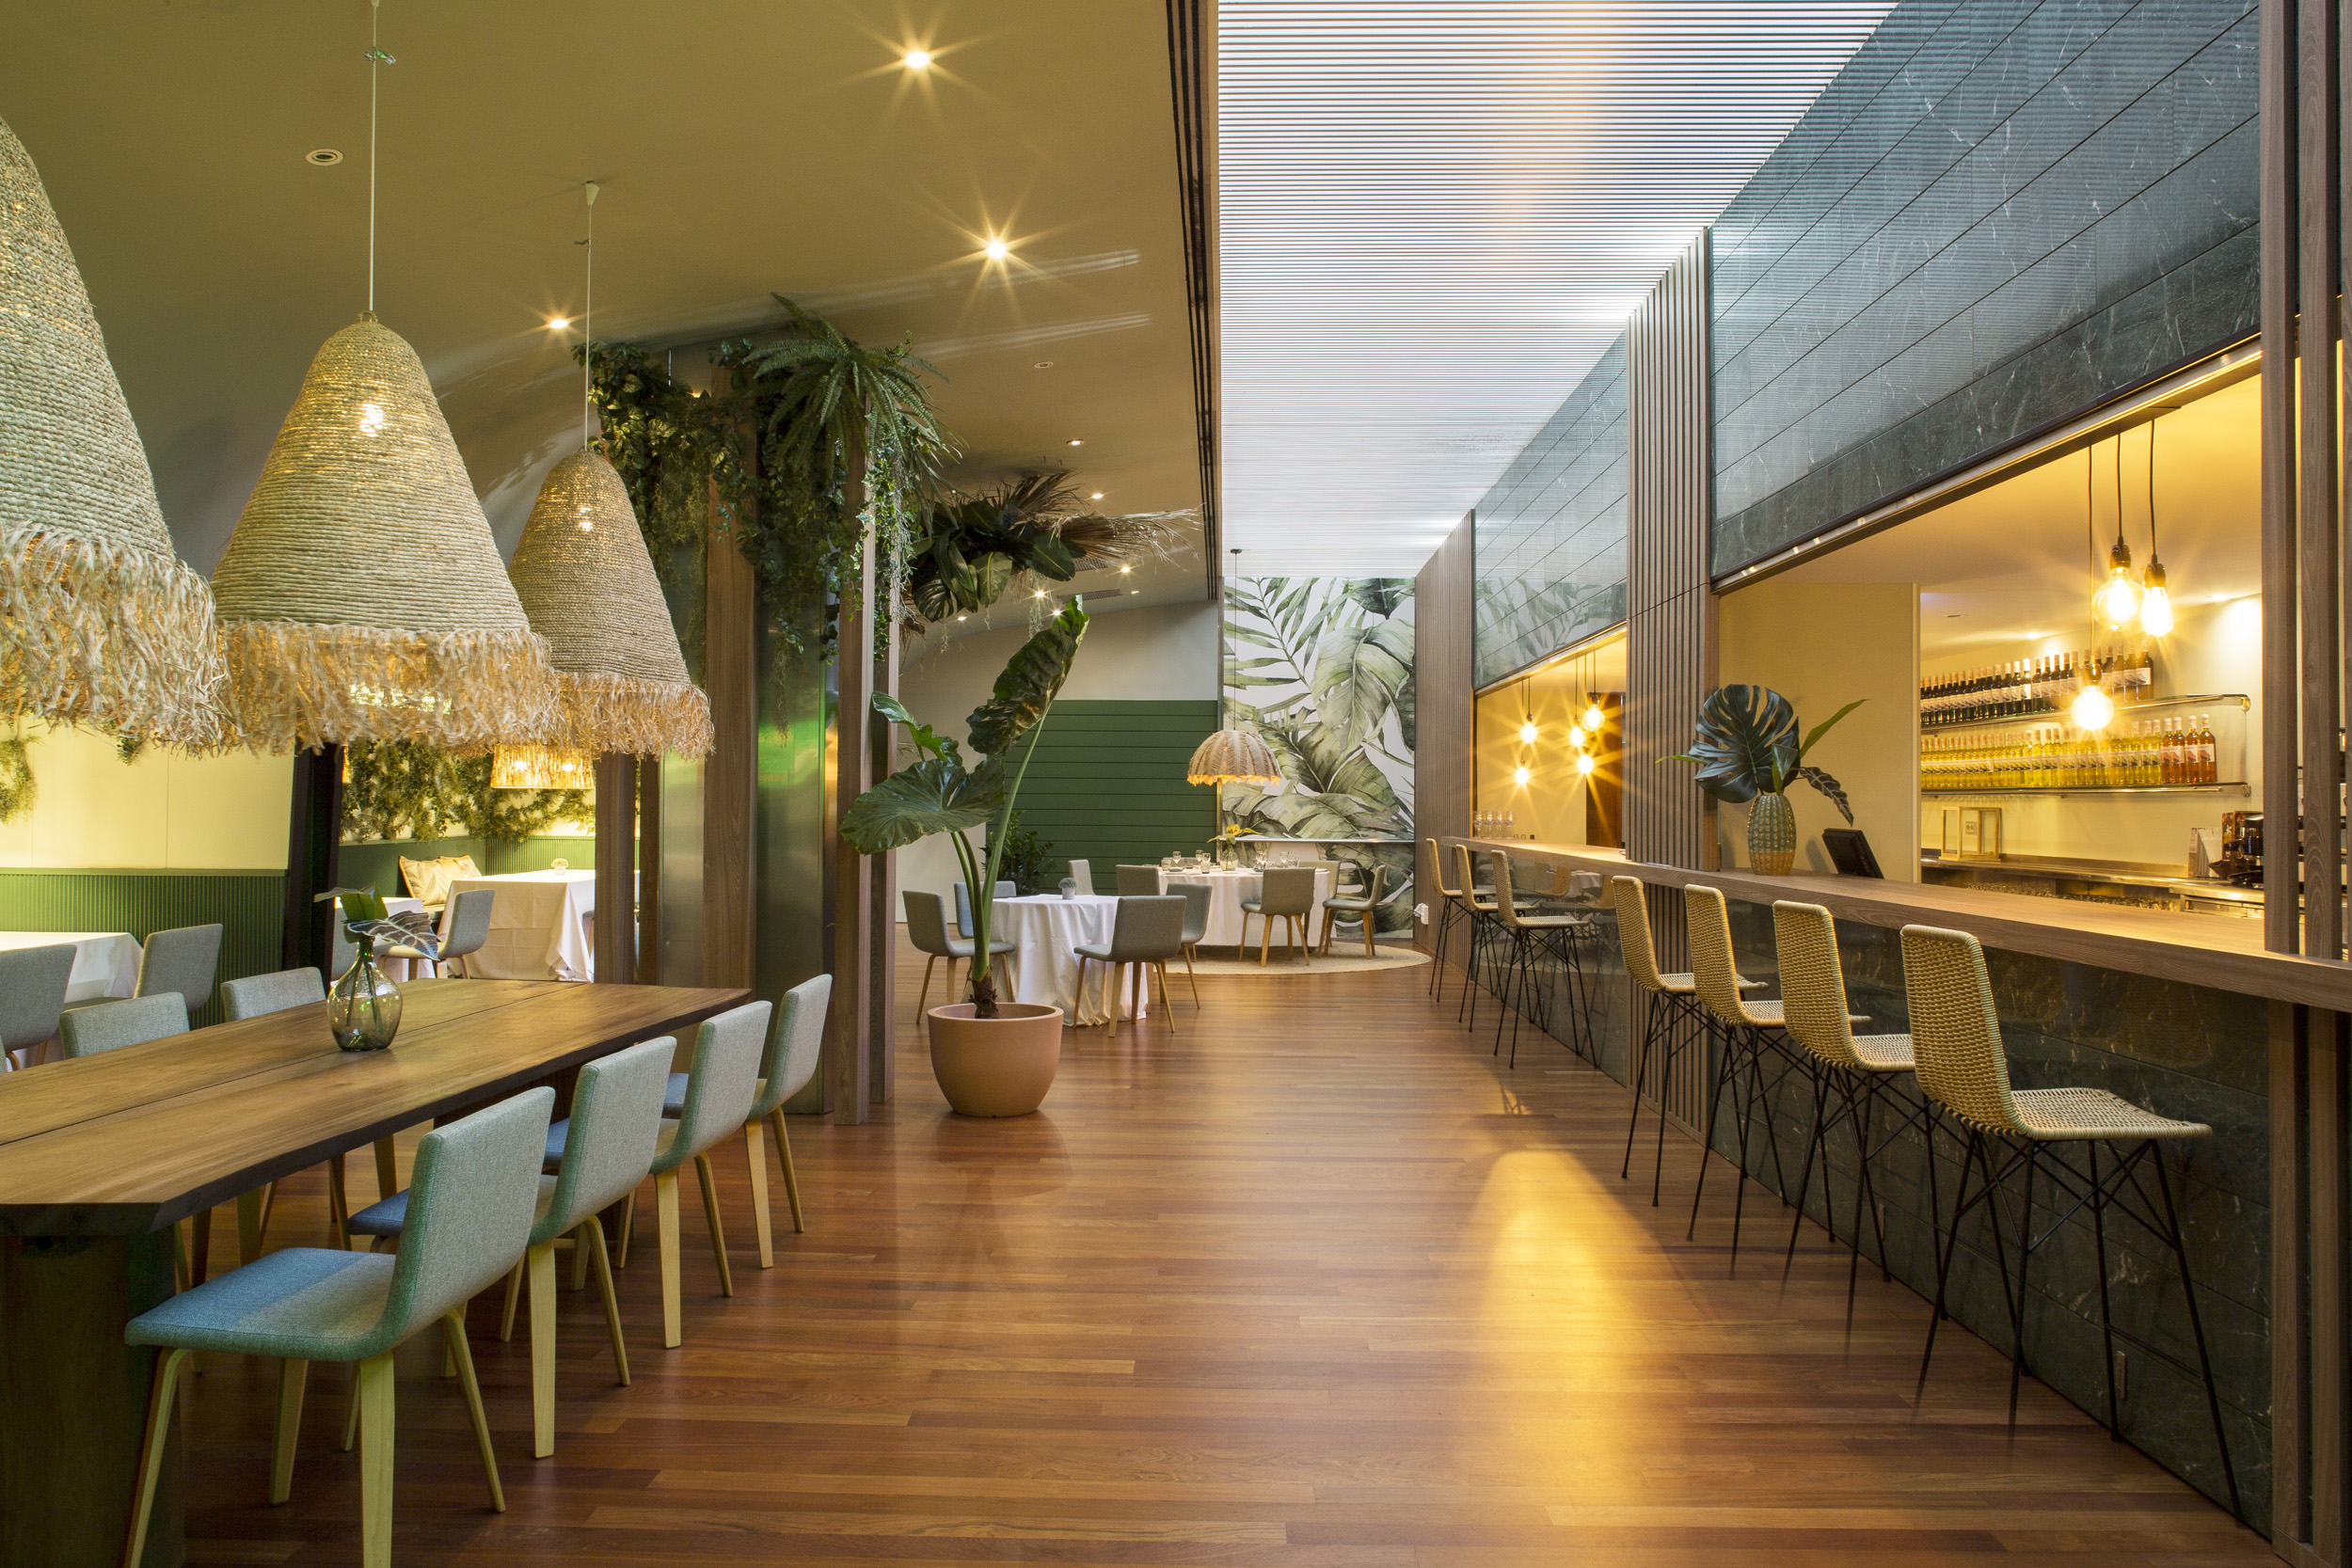 imagen 5 de Restaurante 2CERO7, un nuevo interiorismo espectacular de Pía Capdevila.